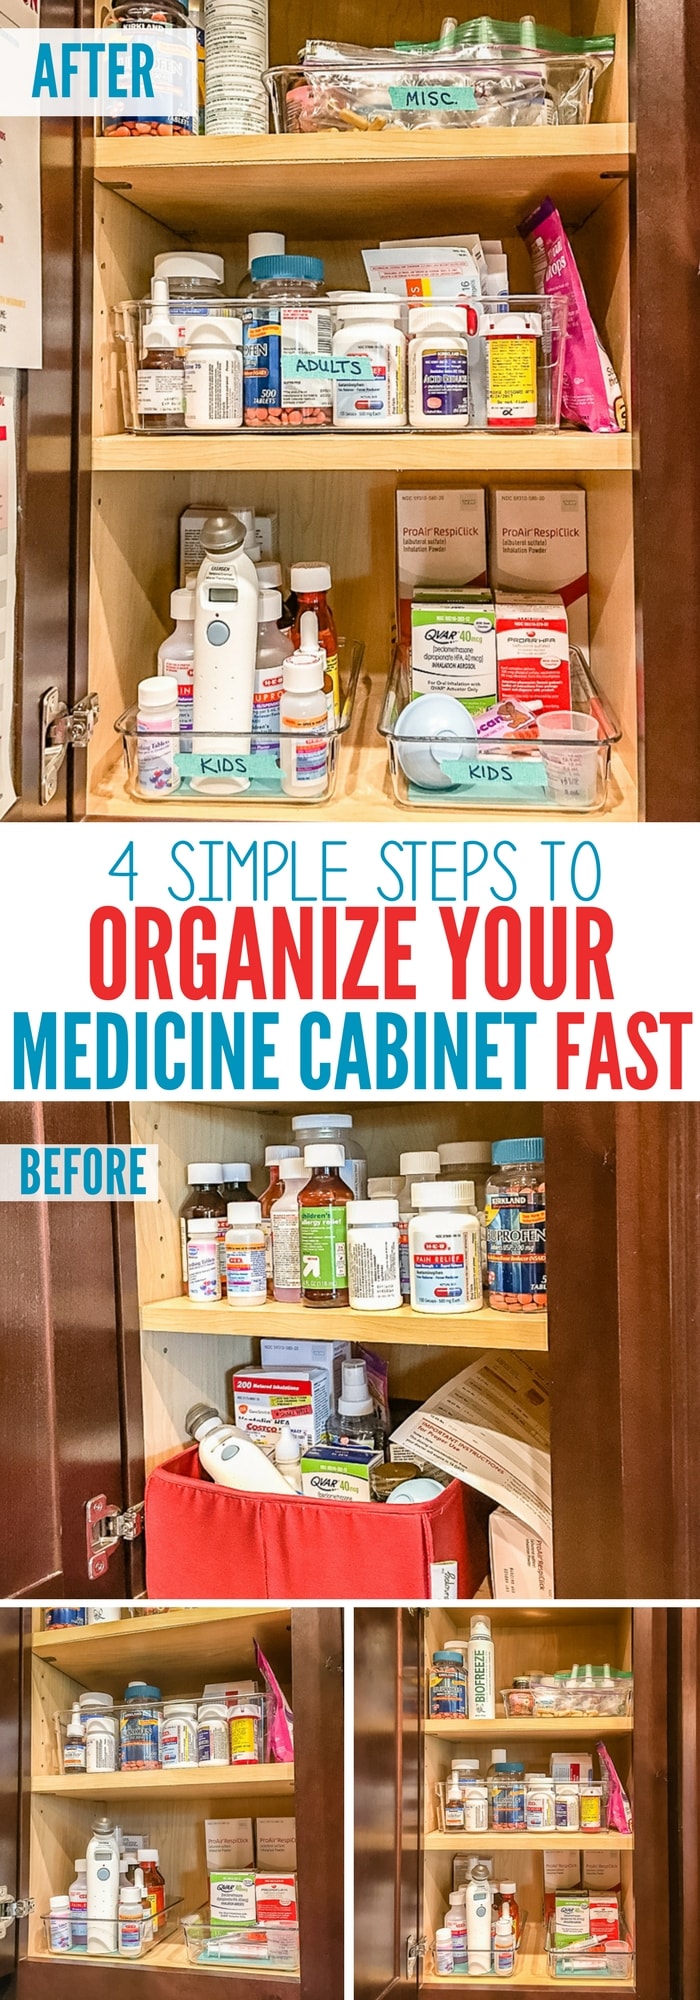  före och efter hur du organiserar ditt medicinskåp snabbt